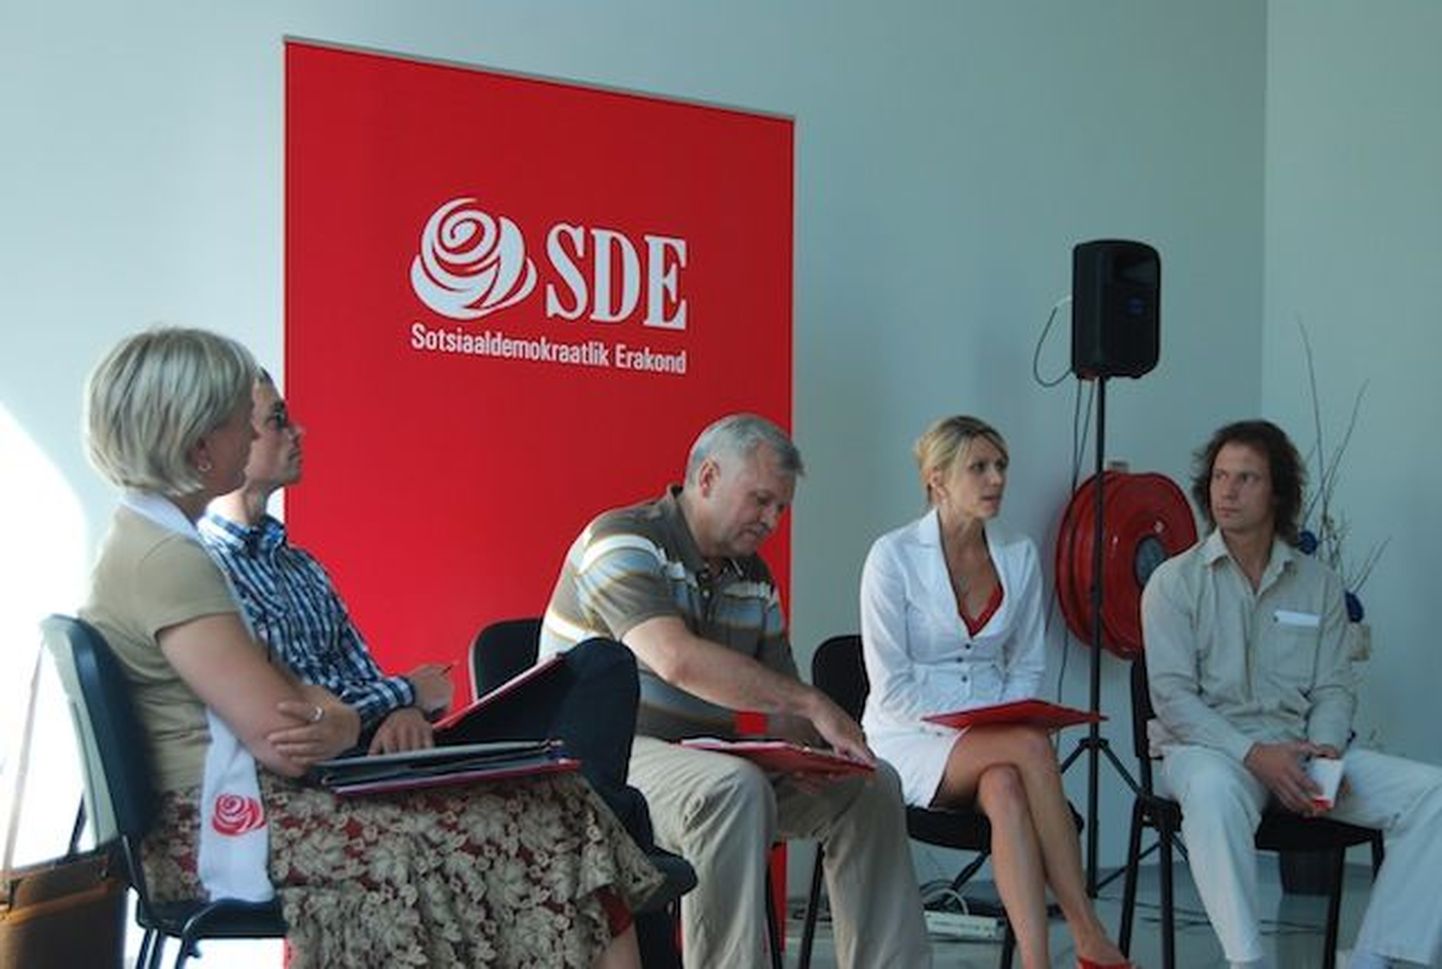 Sotsiaaldemokraatliku erakonna liidrid debateerisid Pärnus Eesti kõige suuremate probleemide üle.